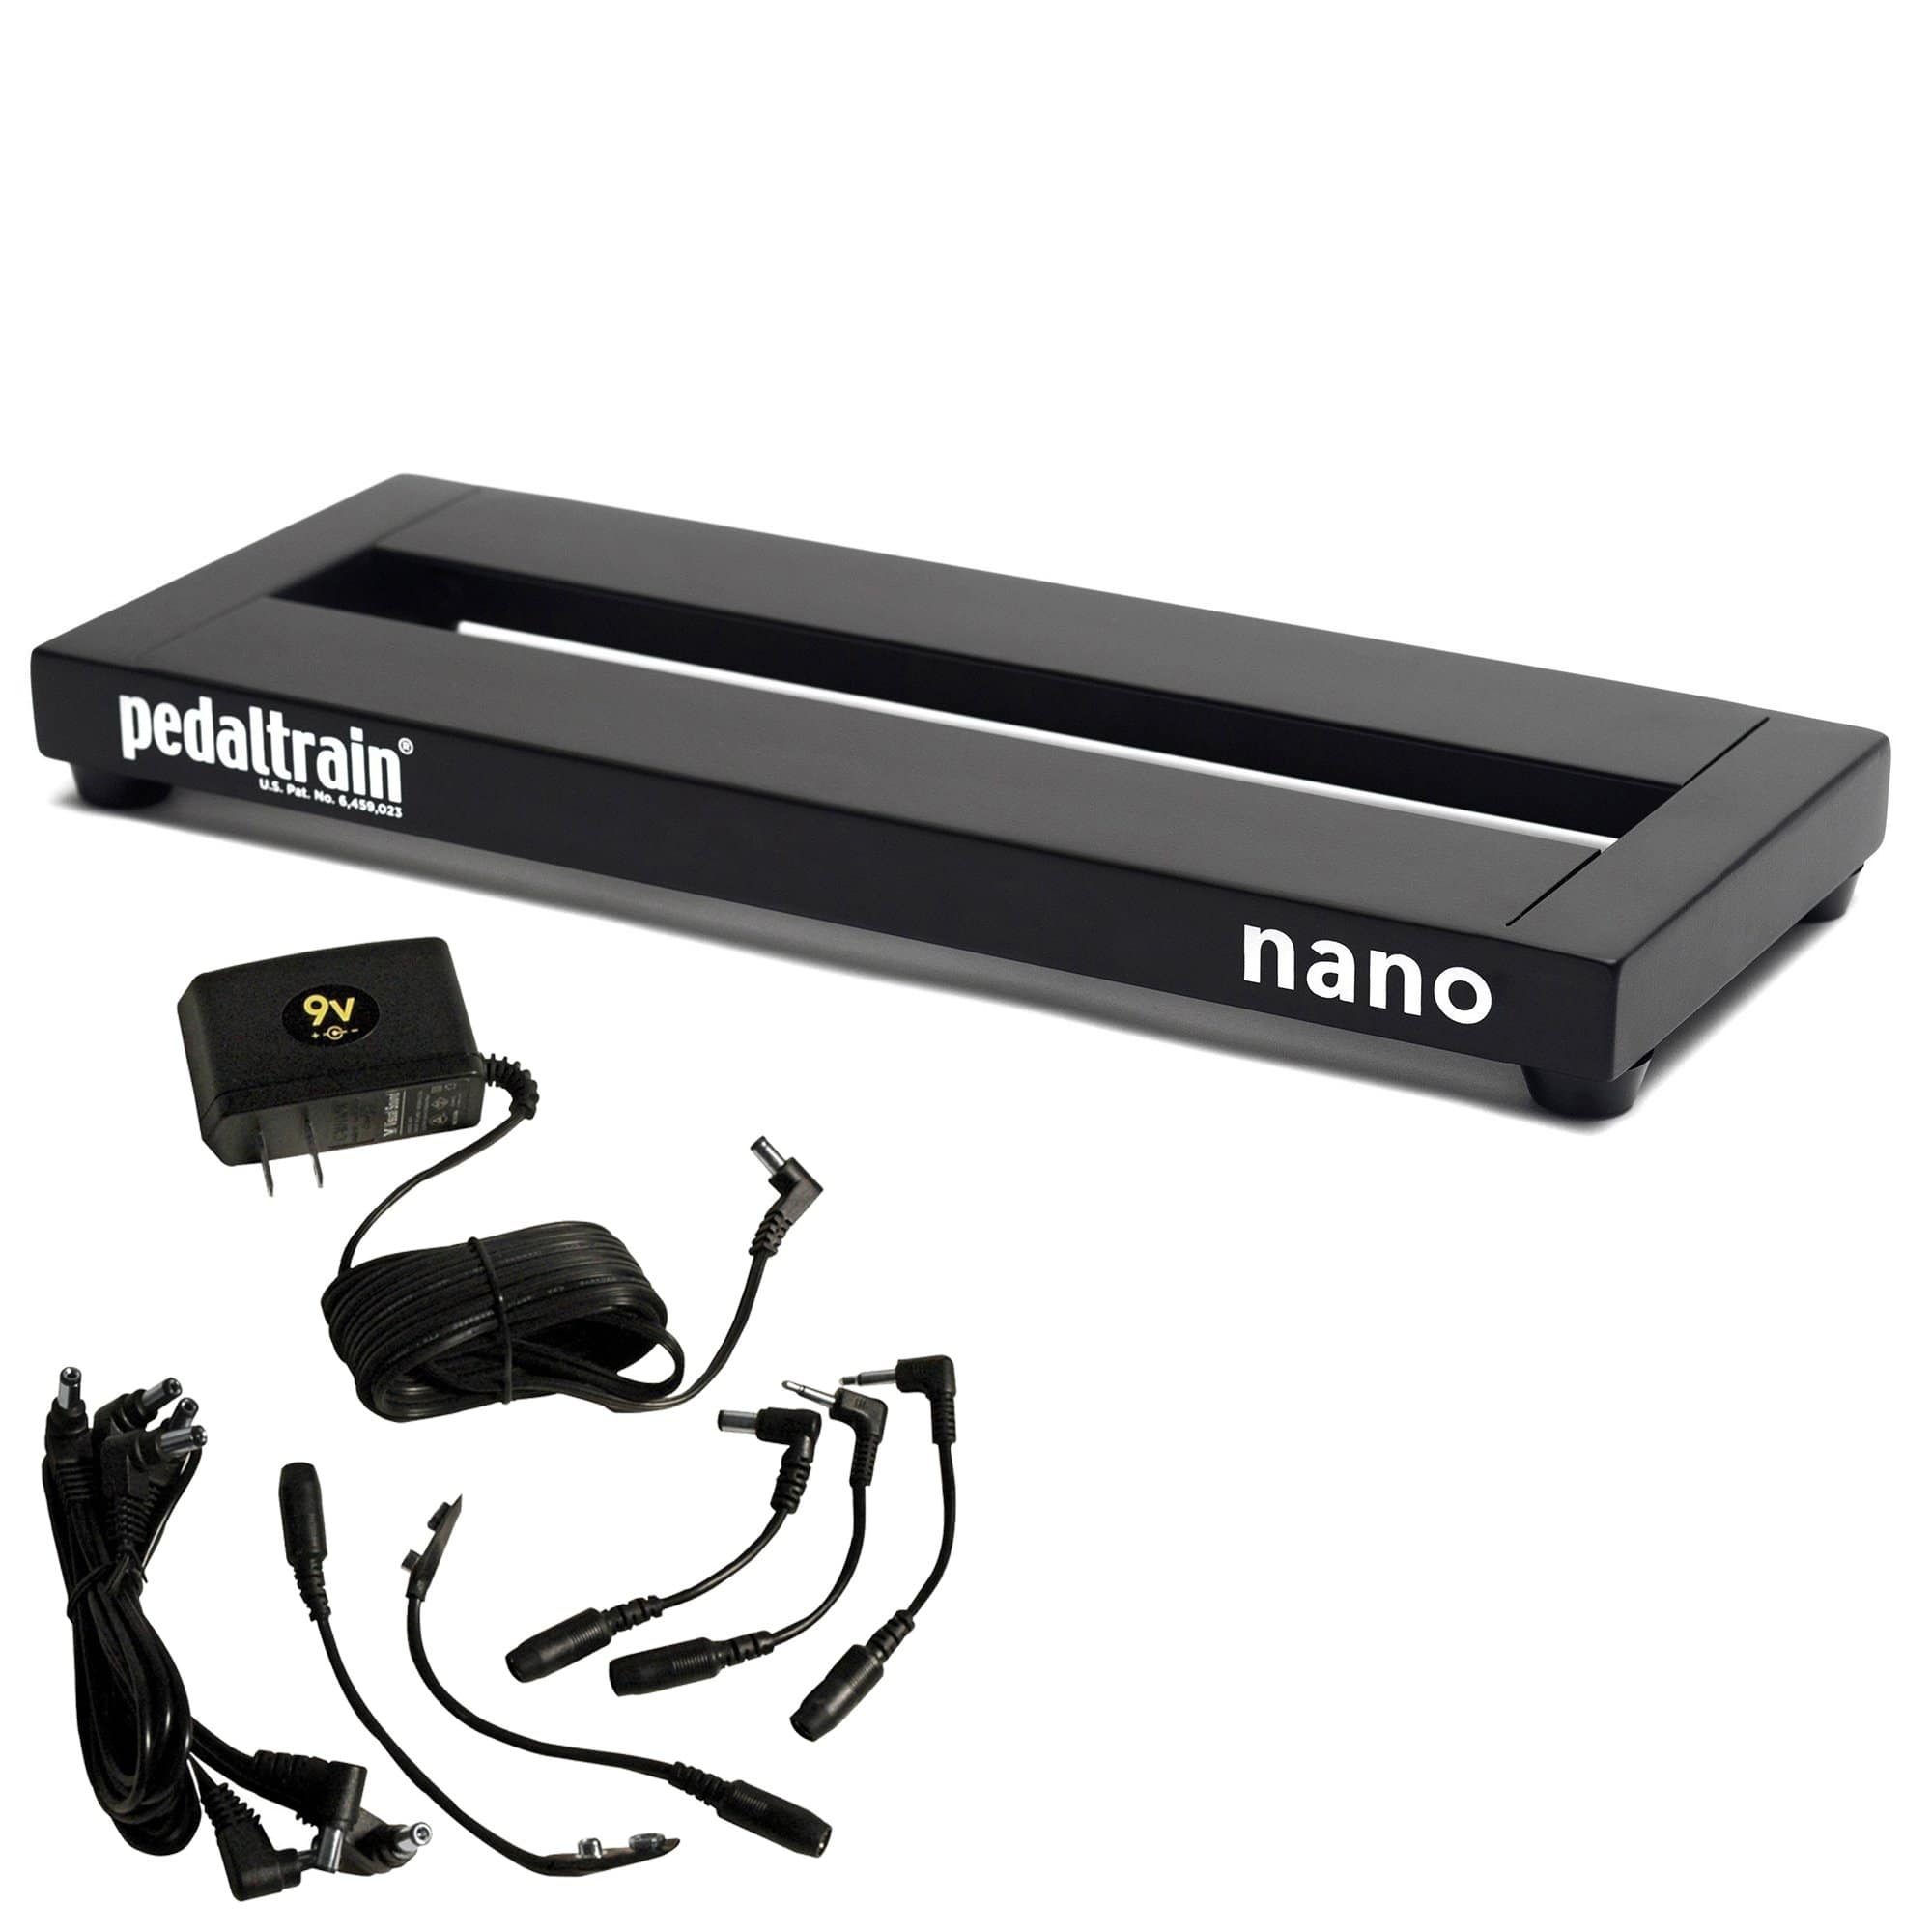 Pedaltrain Nano 14x5.5 Pedalboard w/Soft Case Bundle w/ Truetone 1 Spot 9v  Adapter Combo Pack